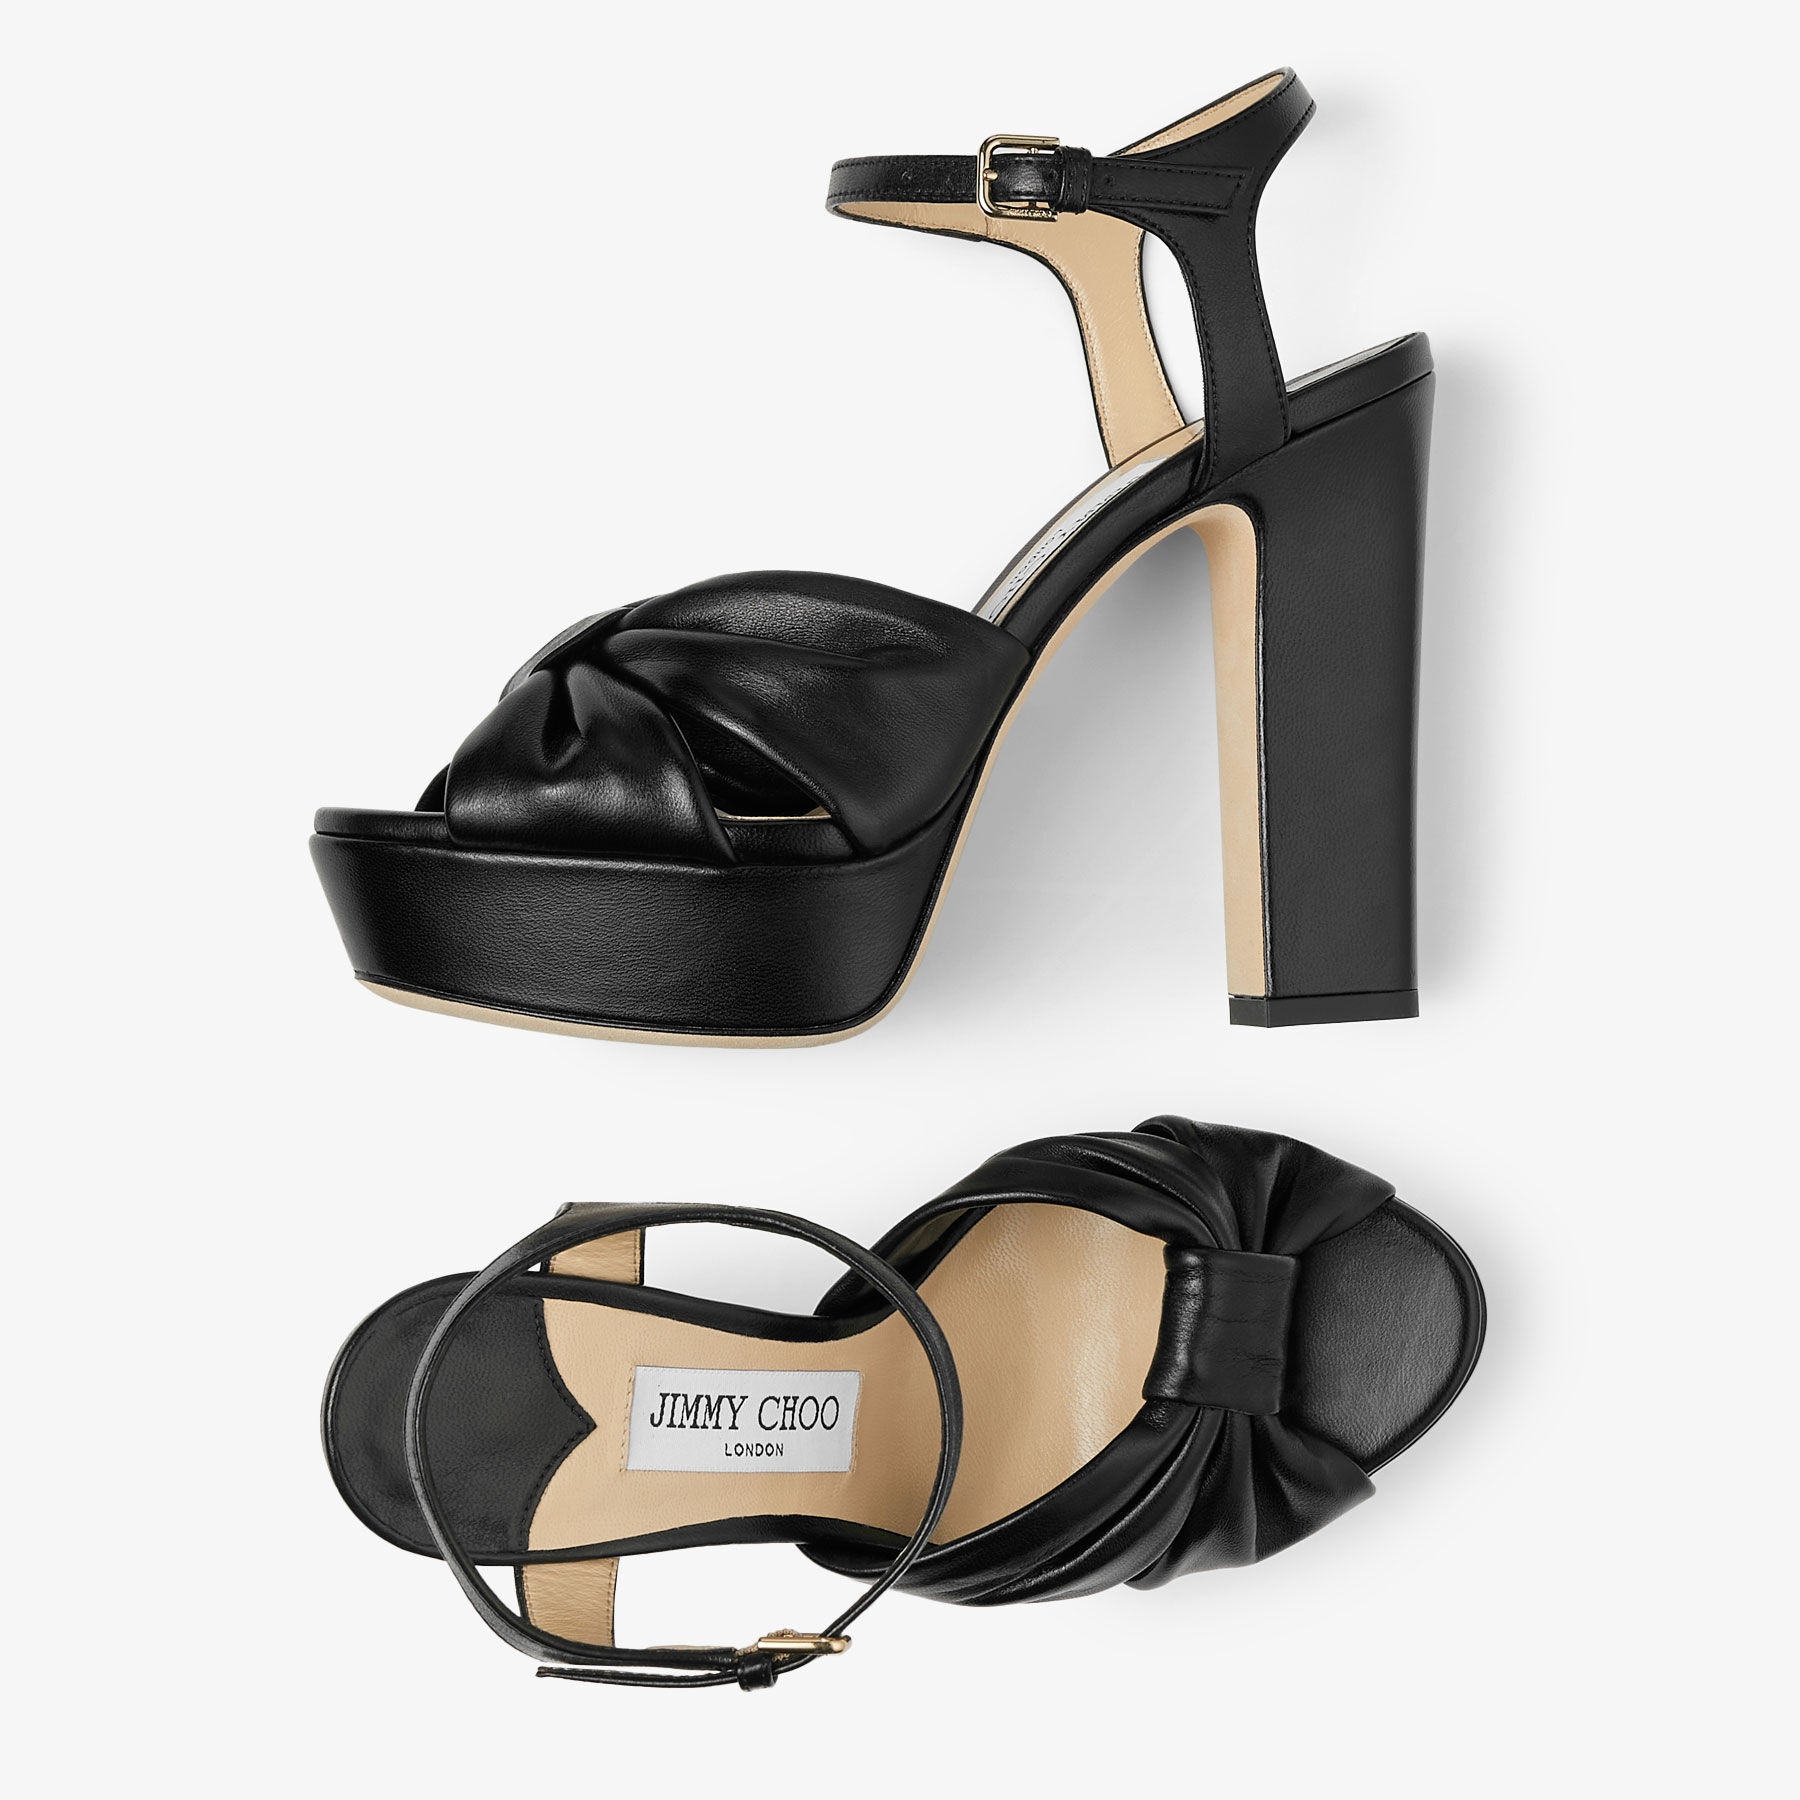 Heloise 120
Black Nappa Leather Platform Sandals - 4